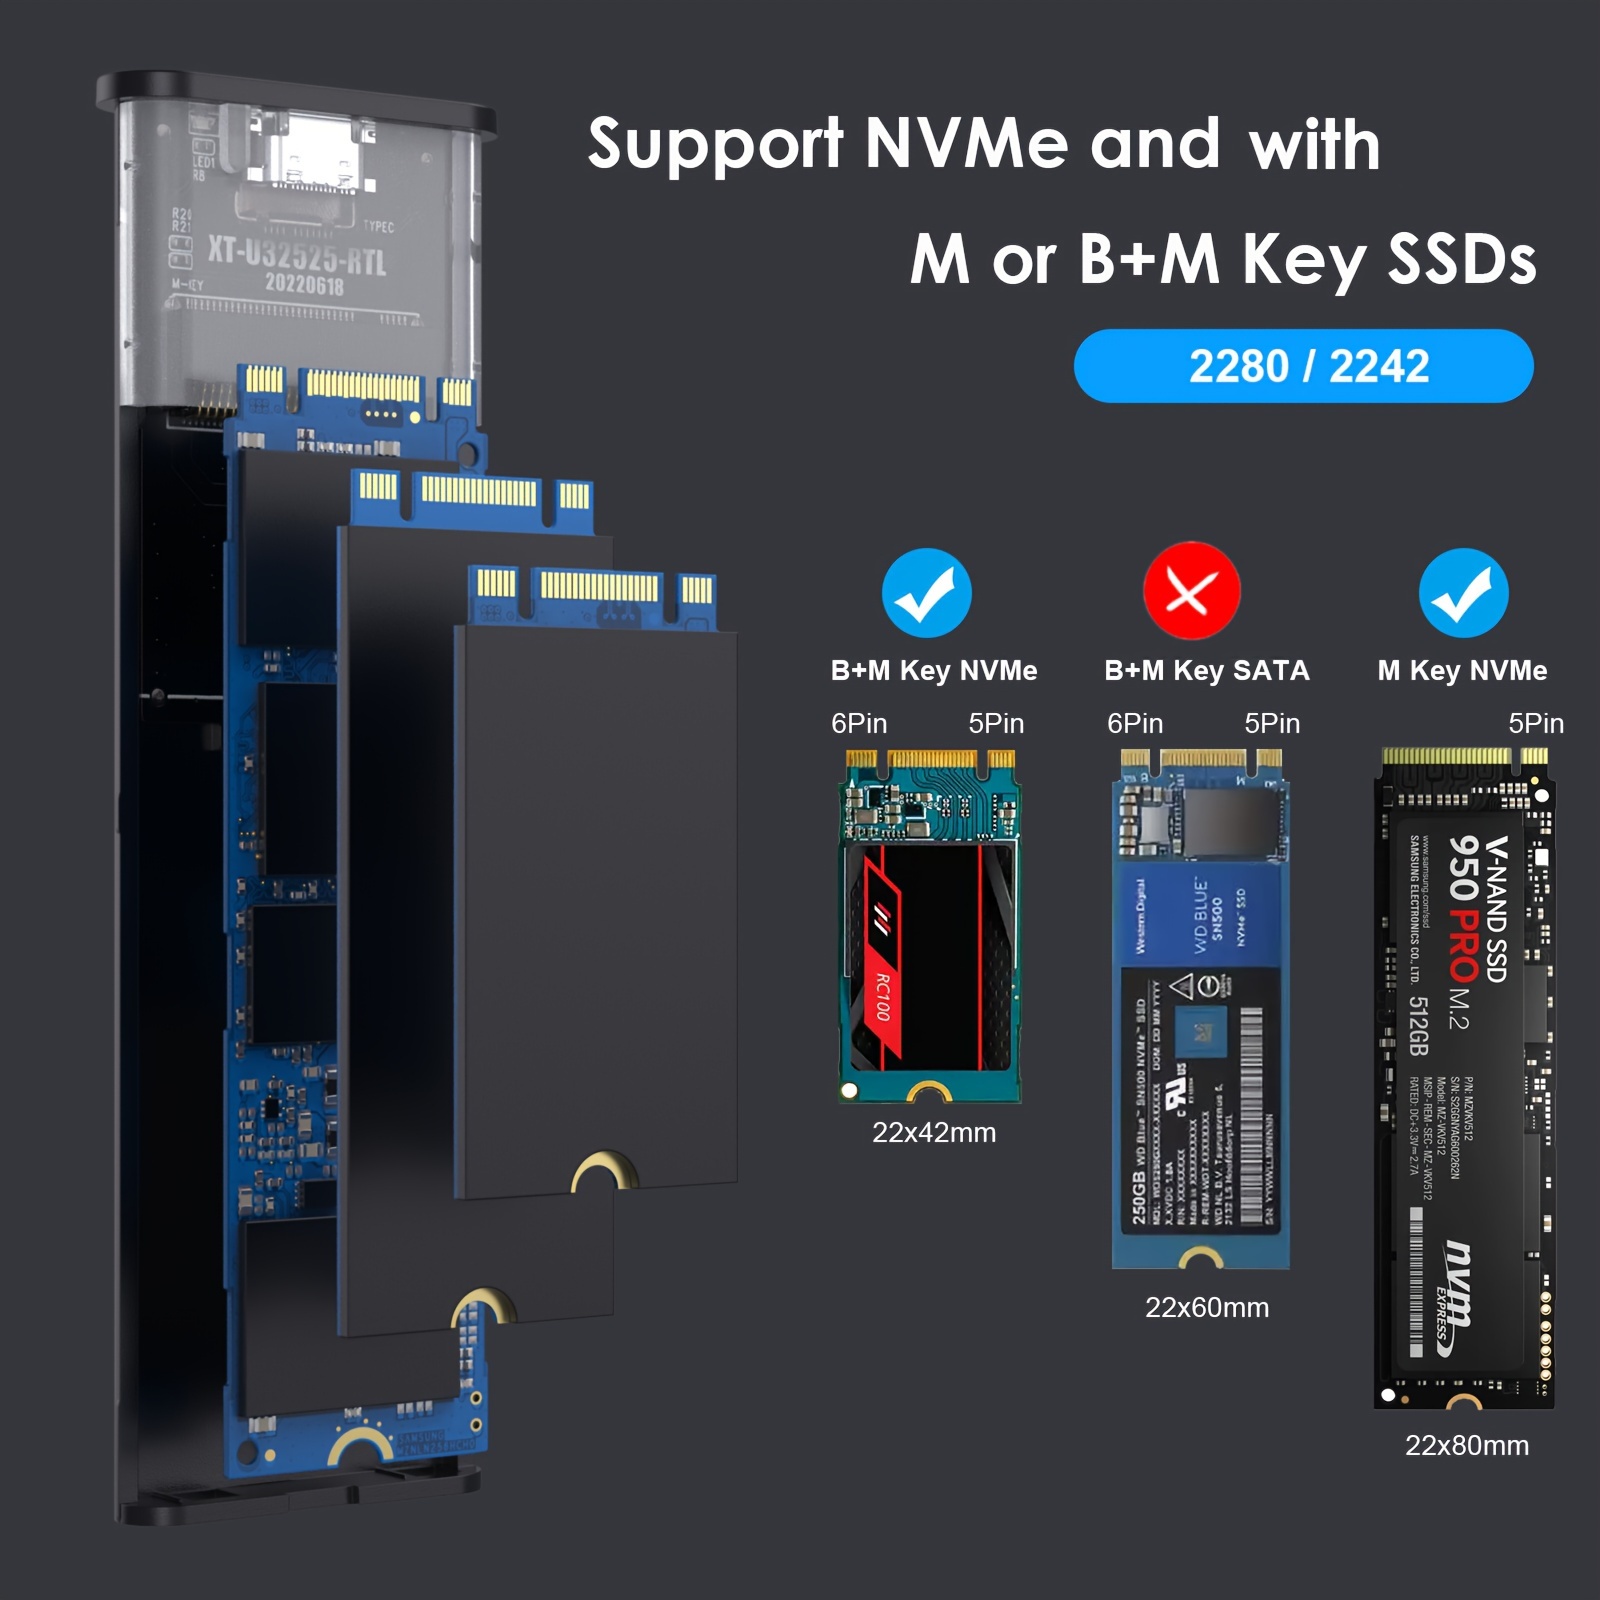 PC-HDE16 CHOETECH Boîtier SSD M.2 NVMe, USB 3.1 Gen 2 [10 Gbit/s] vers NVME  PCI-E M-Key Solid State Drive SSD Adaptateur de boîtier externe Prise en